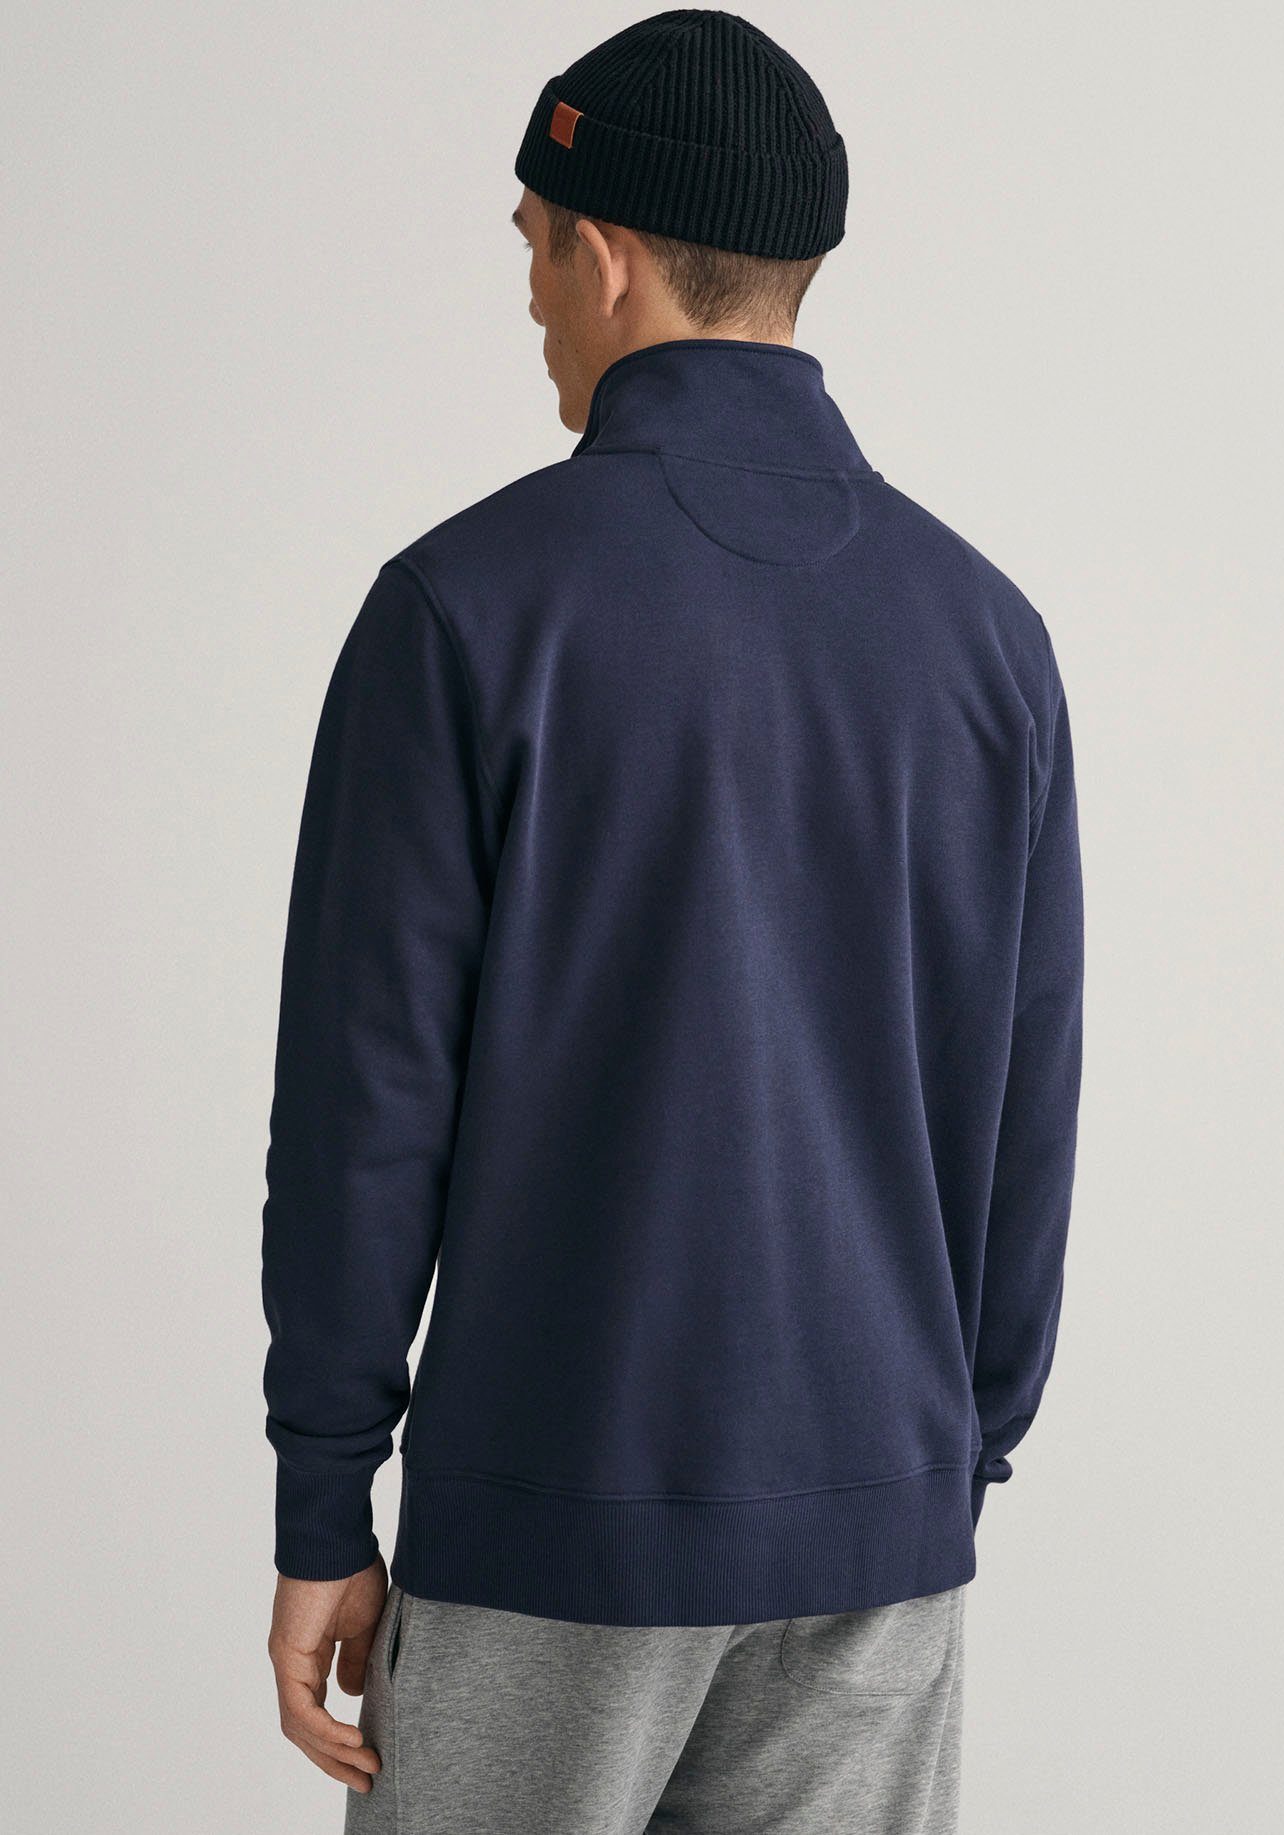 Brust auf mit evening blue ZIP SHIELD Logostickerei Gant Sweatshirt SWEAT HALF der REG